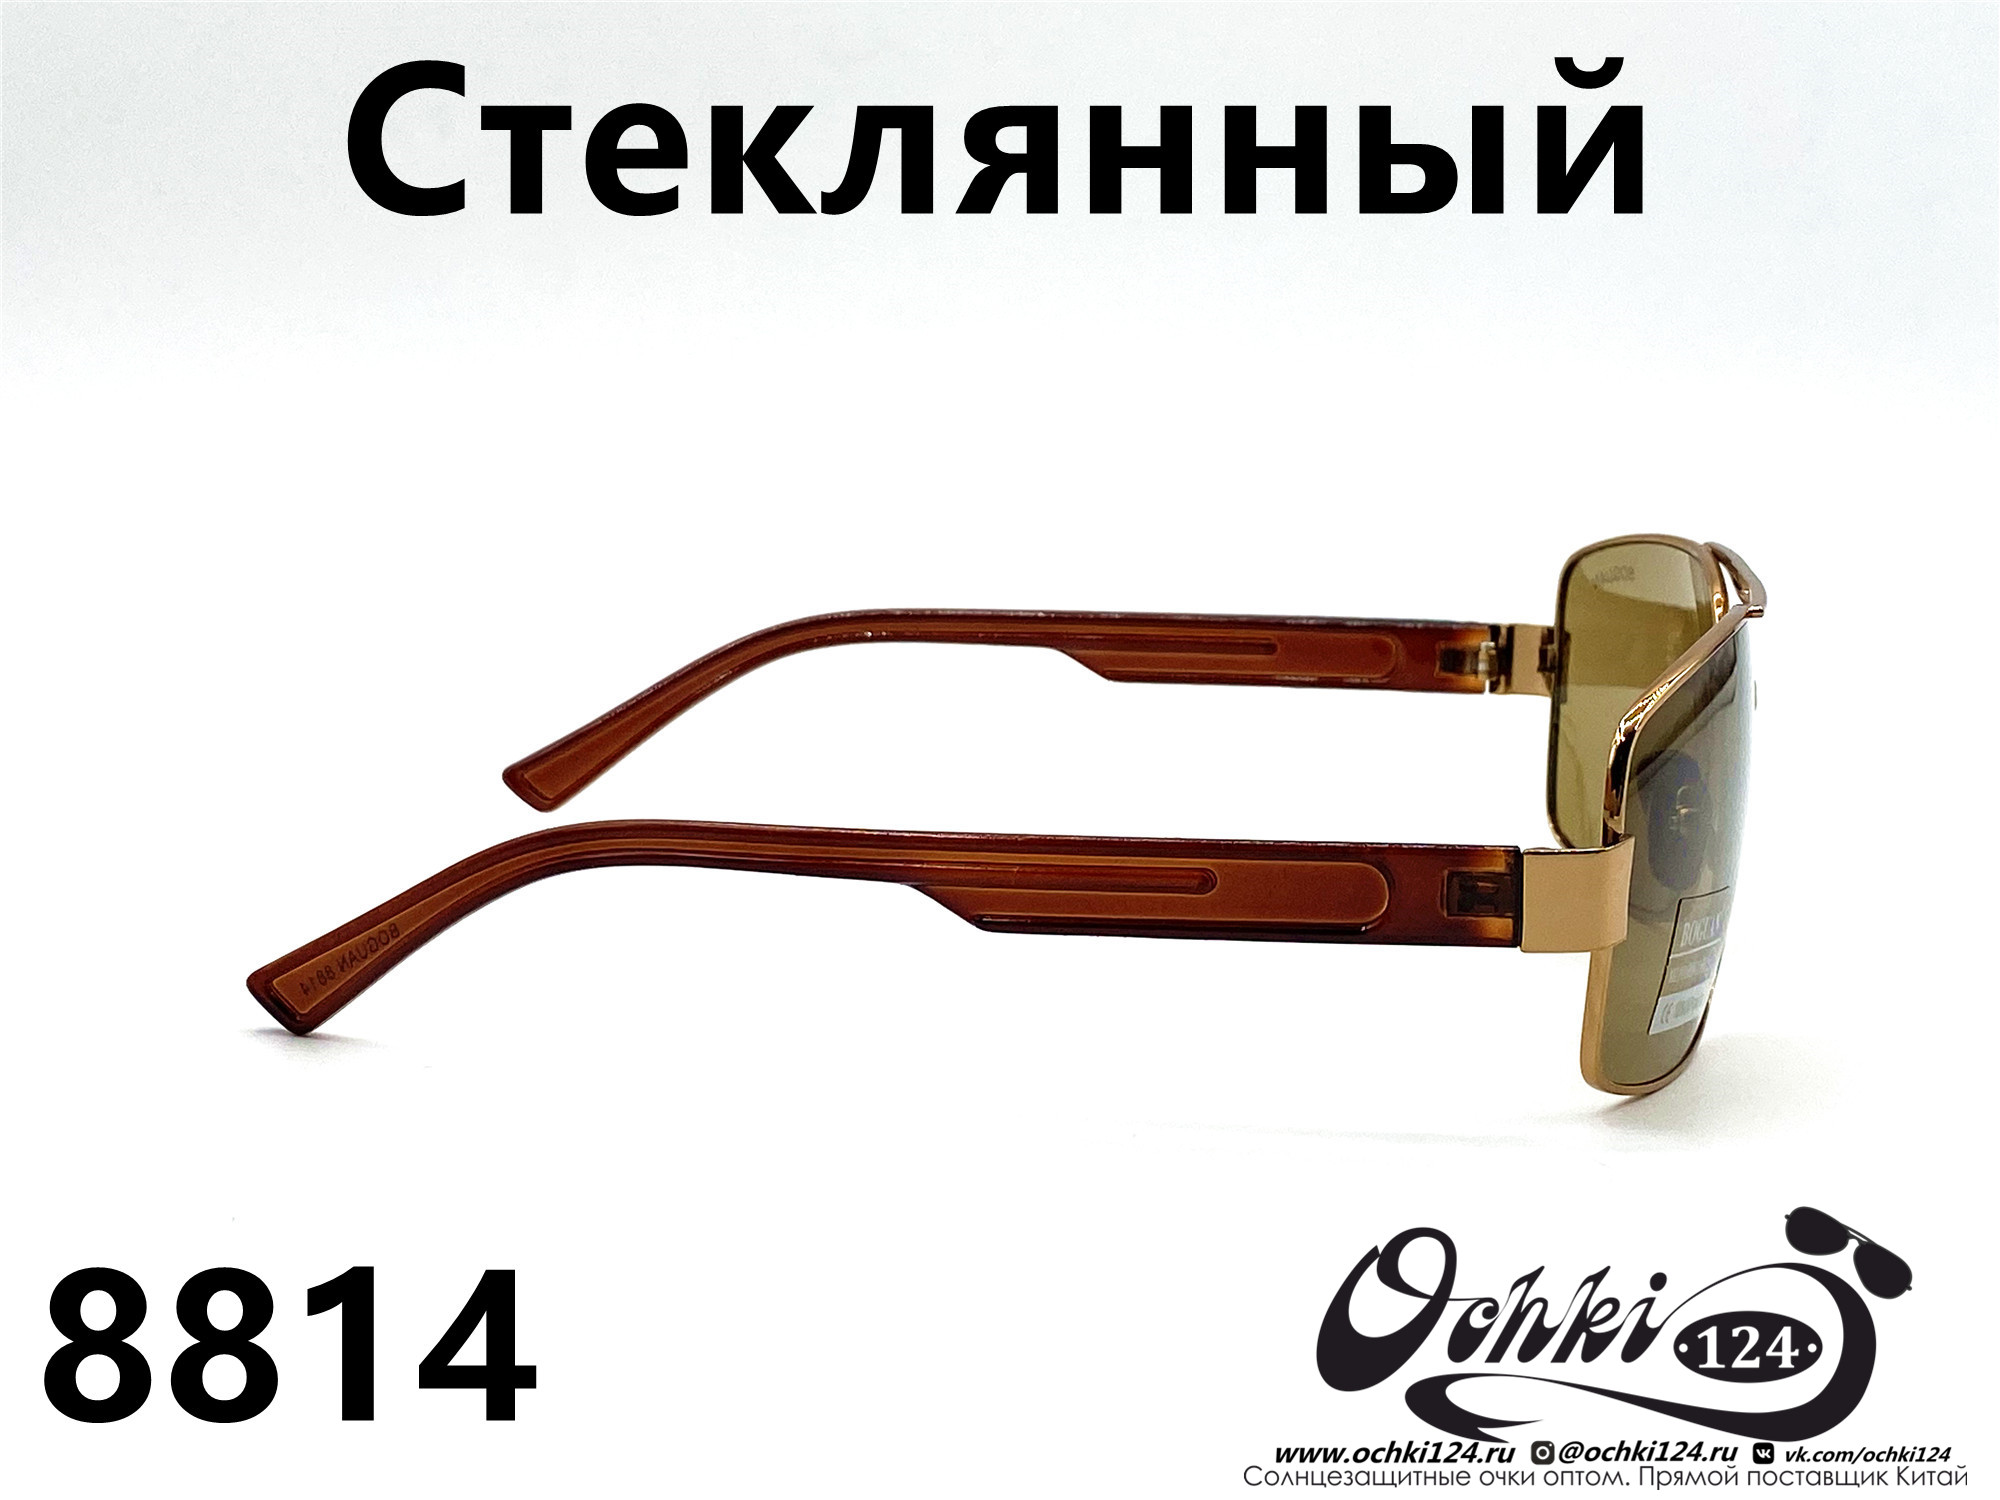  Солнцезащитные очки картинка 2022 Мужские Стеклянные Авиаторы Boguan 8814-2 